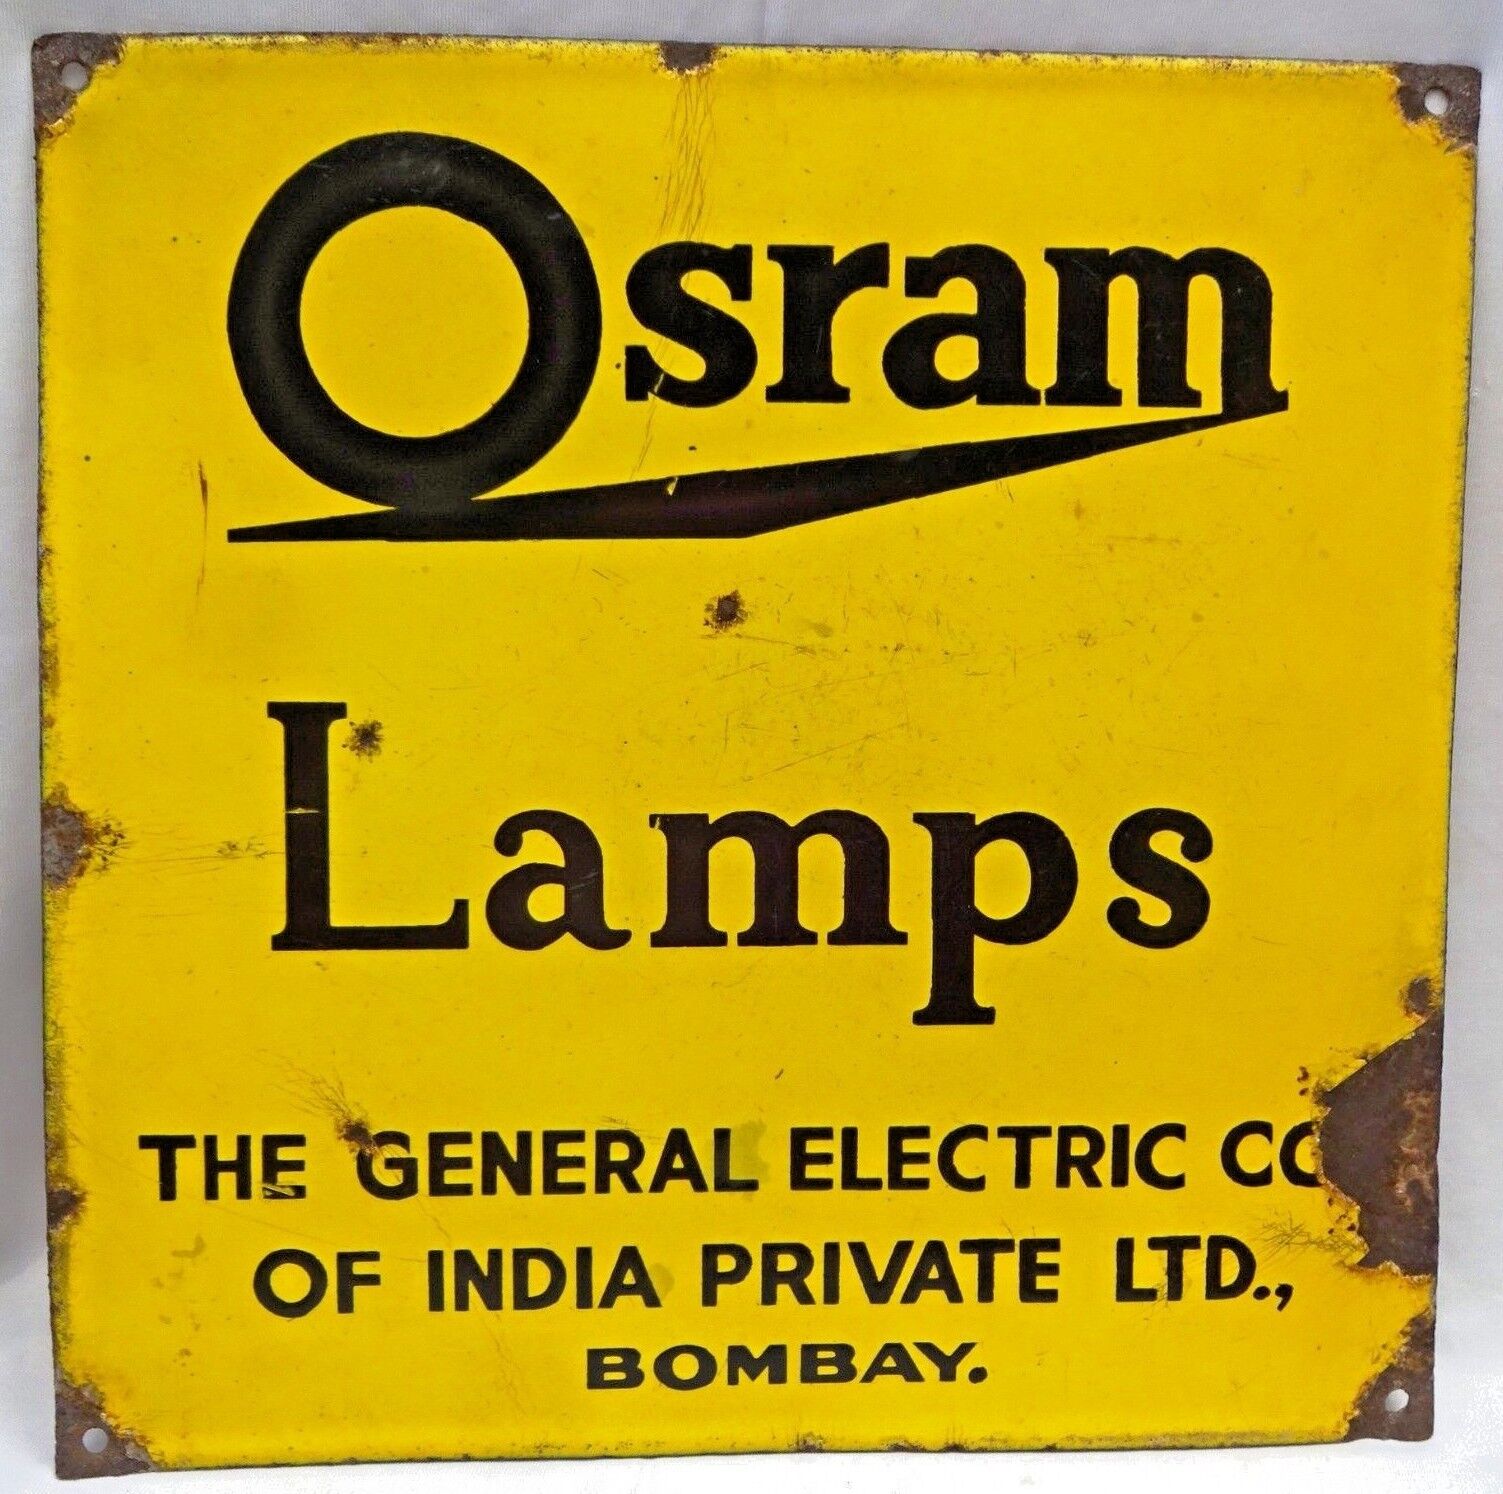 Vintage Osram Lamp Bulb Porcelain Enamel Sign Board General Electric Company Old